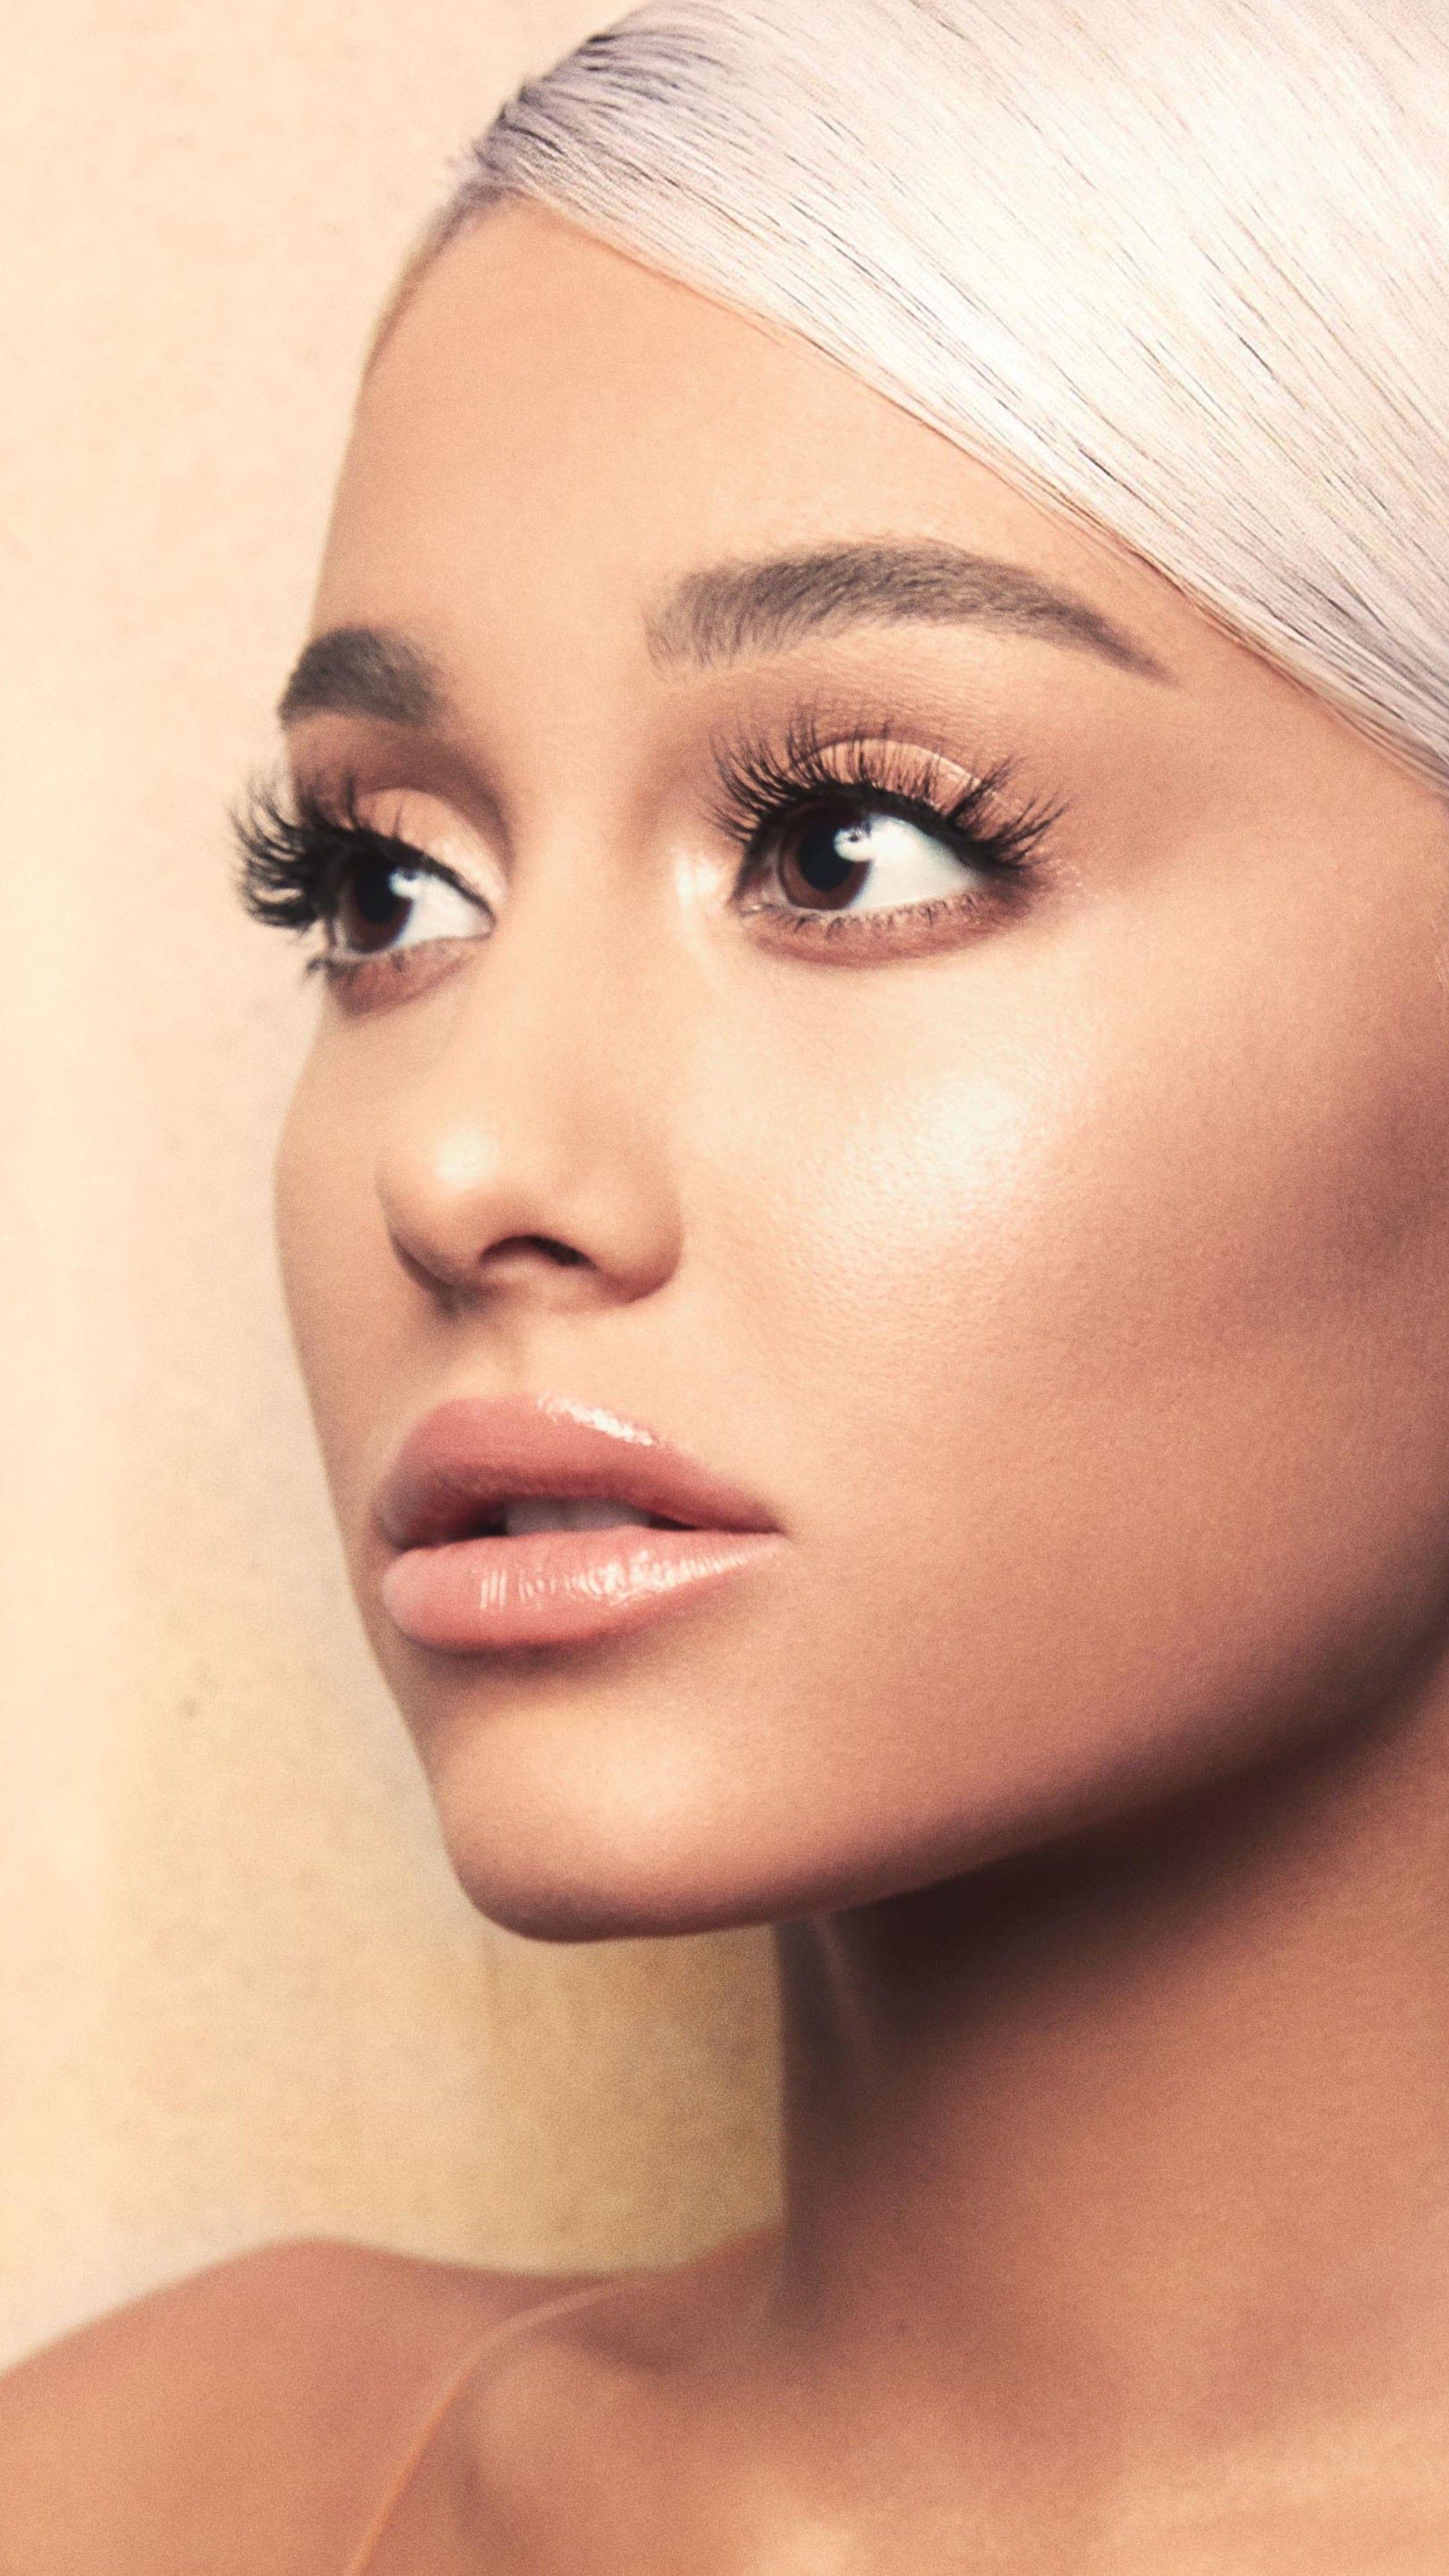 Ariana Grande Face Portrait 4k Sony Xperia X, XZ, Z5 Premium